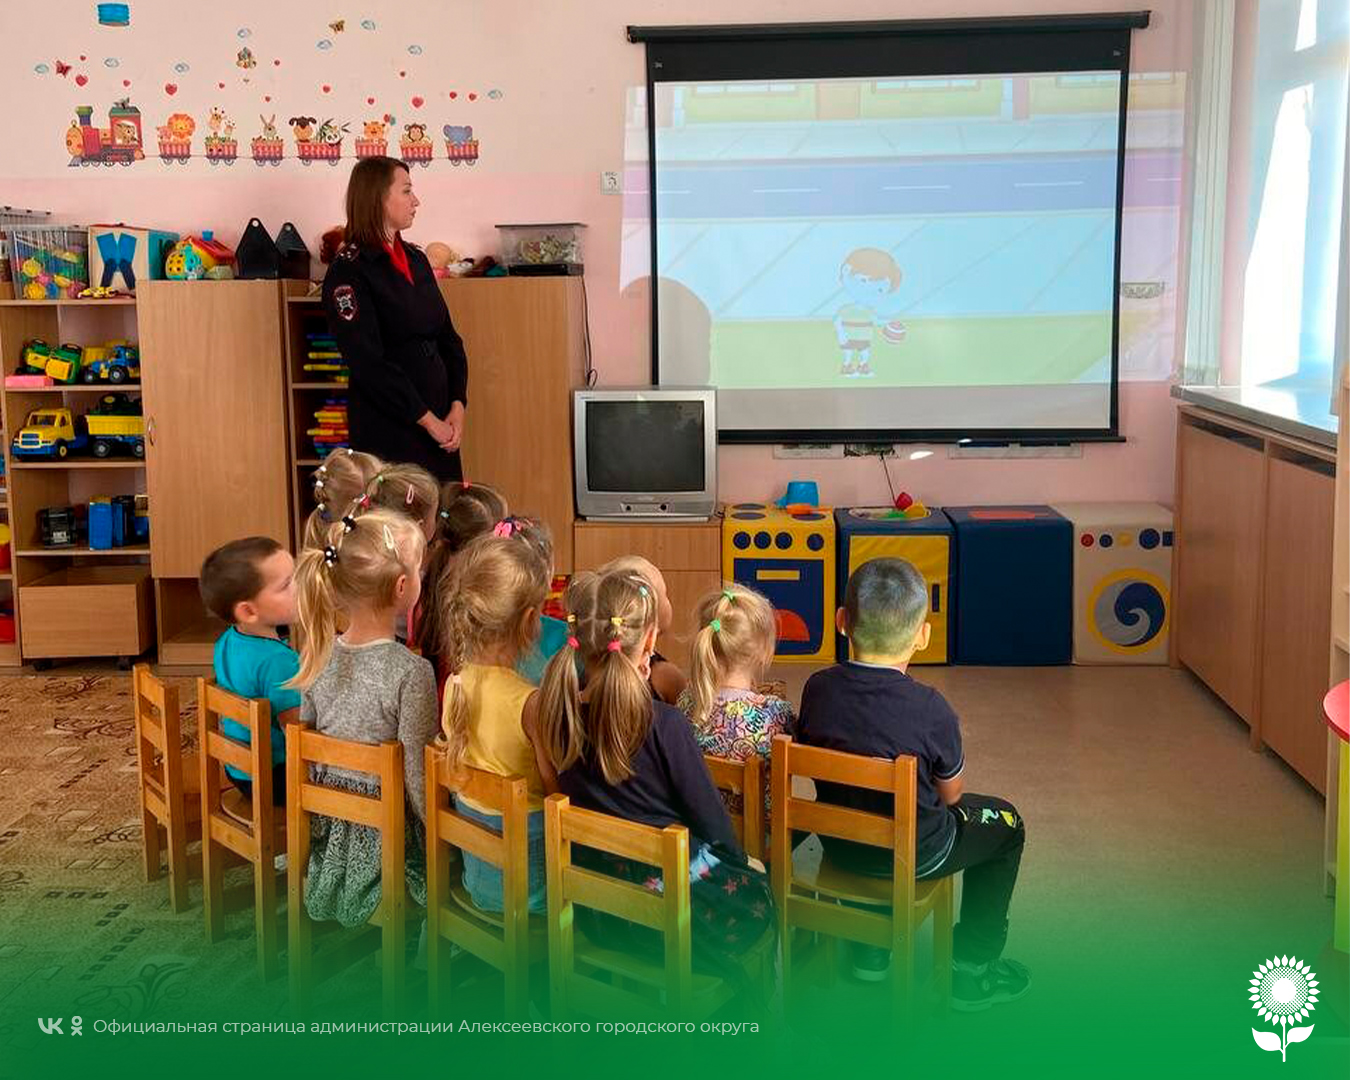 Сотрудница Госавтоинспекции ОМВД России по Алексеевскому городскому округу провела беседу с воспитанниками Гарбузовского детского сада и их родителям.